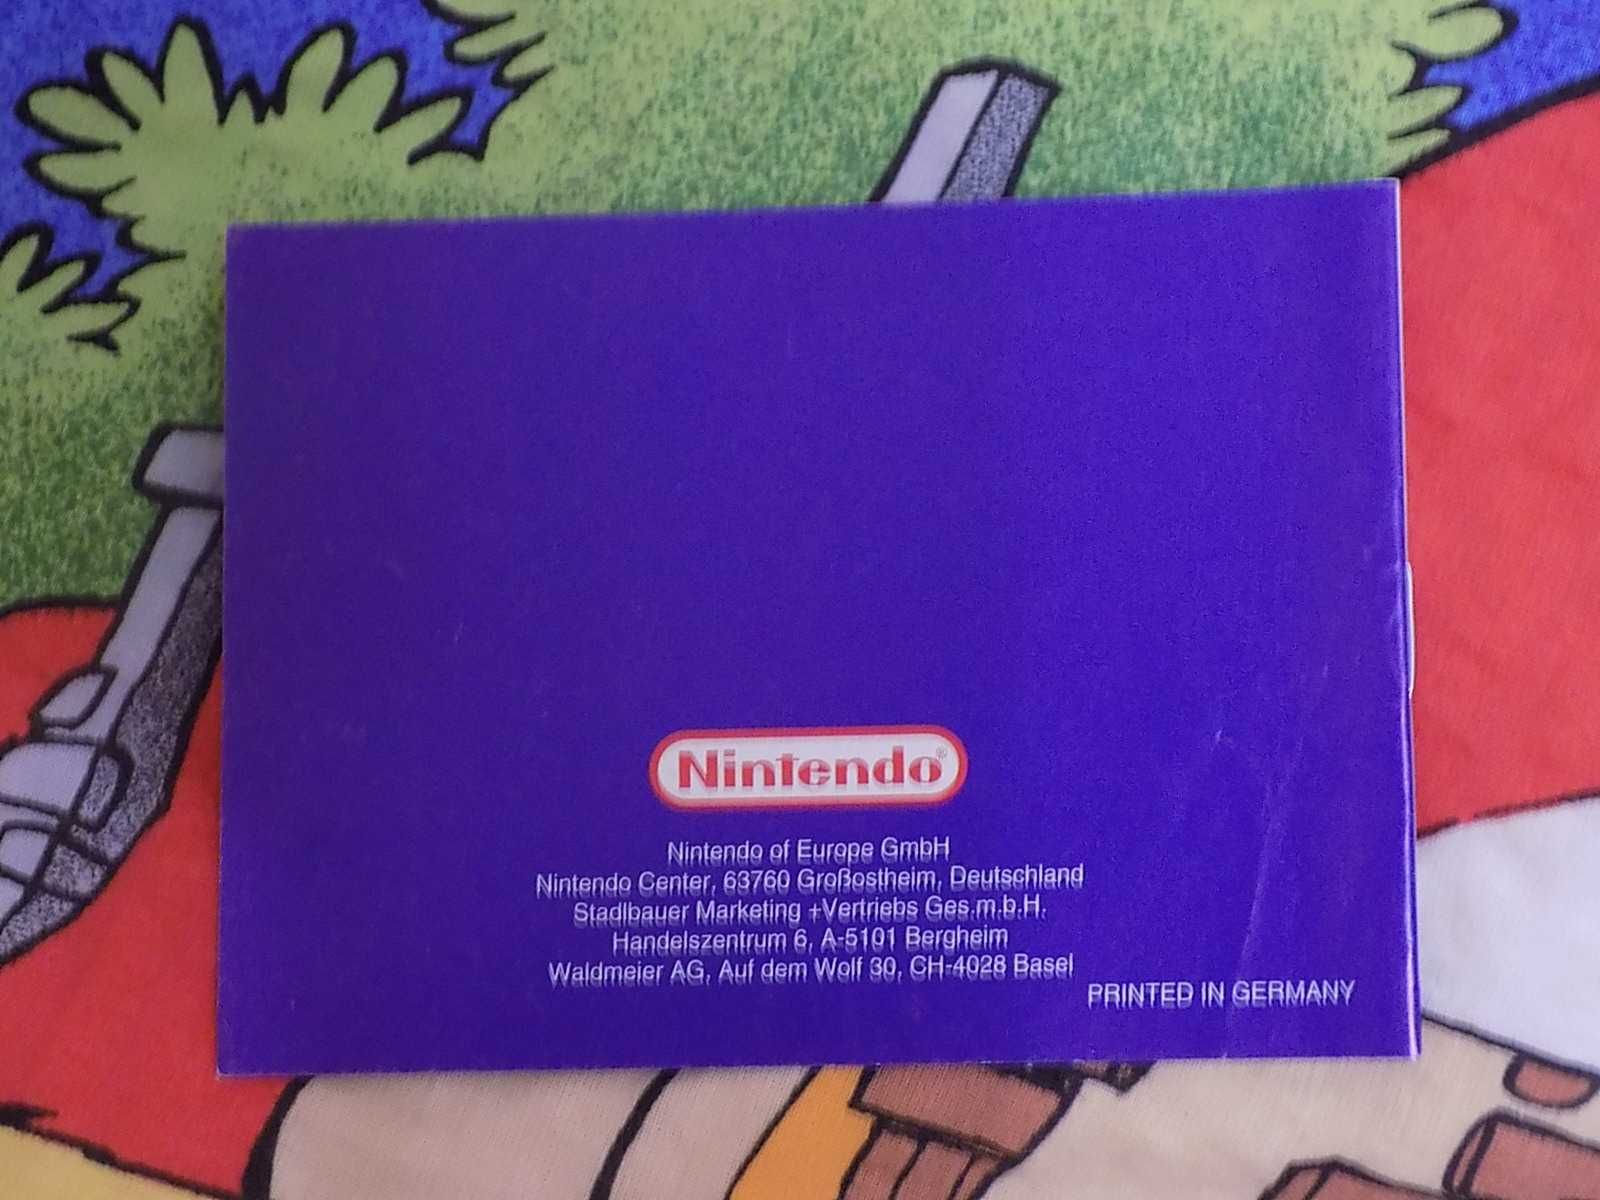 Wario Land 2 na Nintendo Game Boy/Game Boy Color/ GBA SP Advance+instr